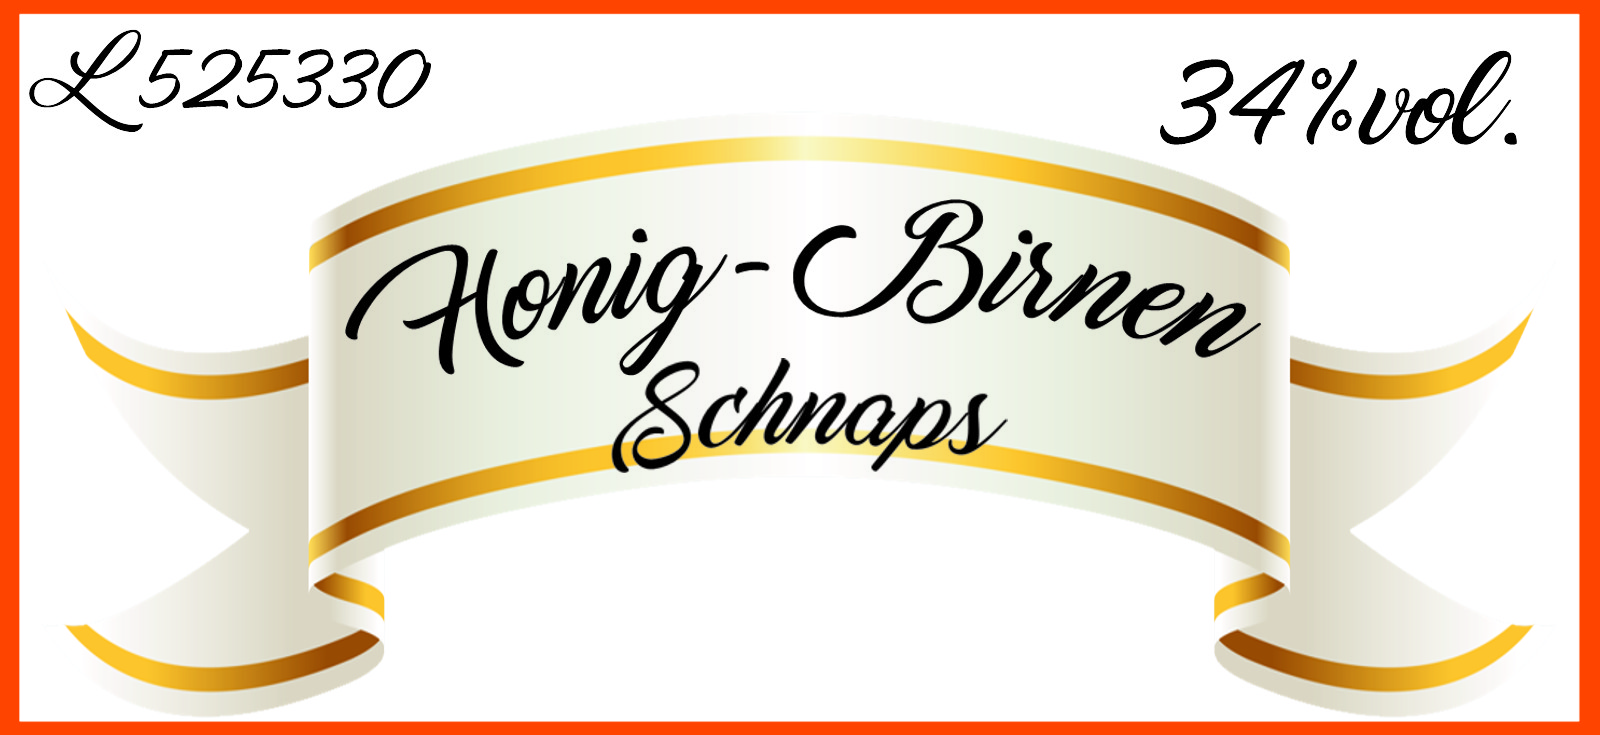 Honig-Birnen-Schnaps